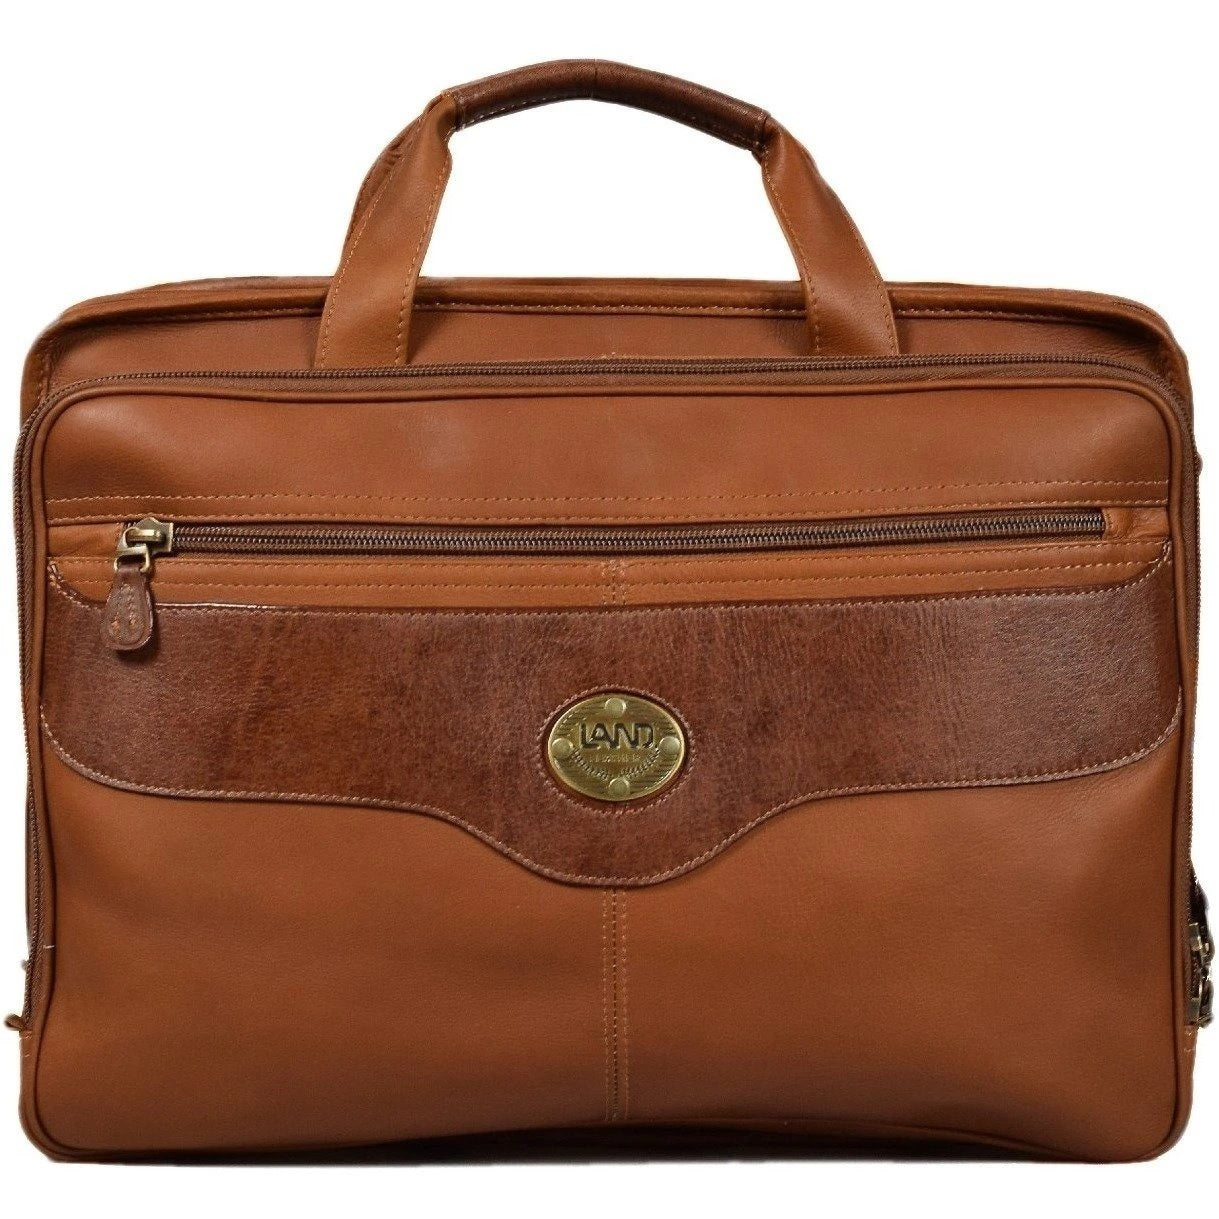 Santa Fe Collection: Traveler's Brief Bag